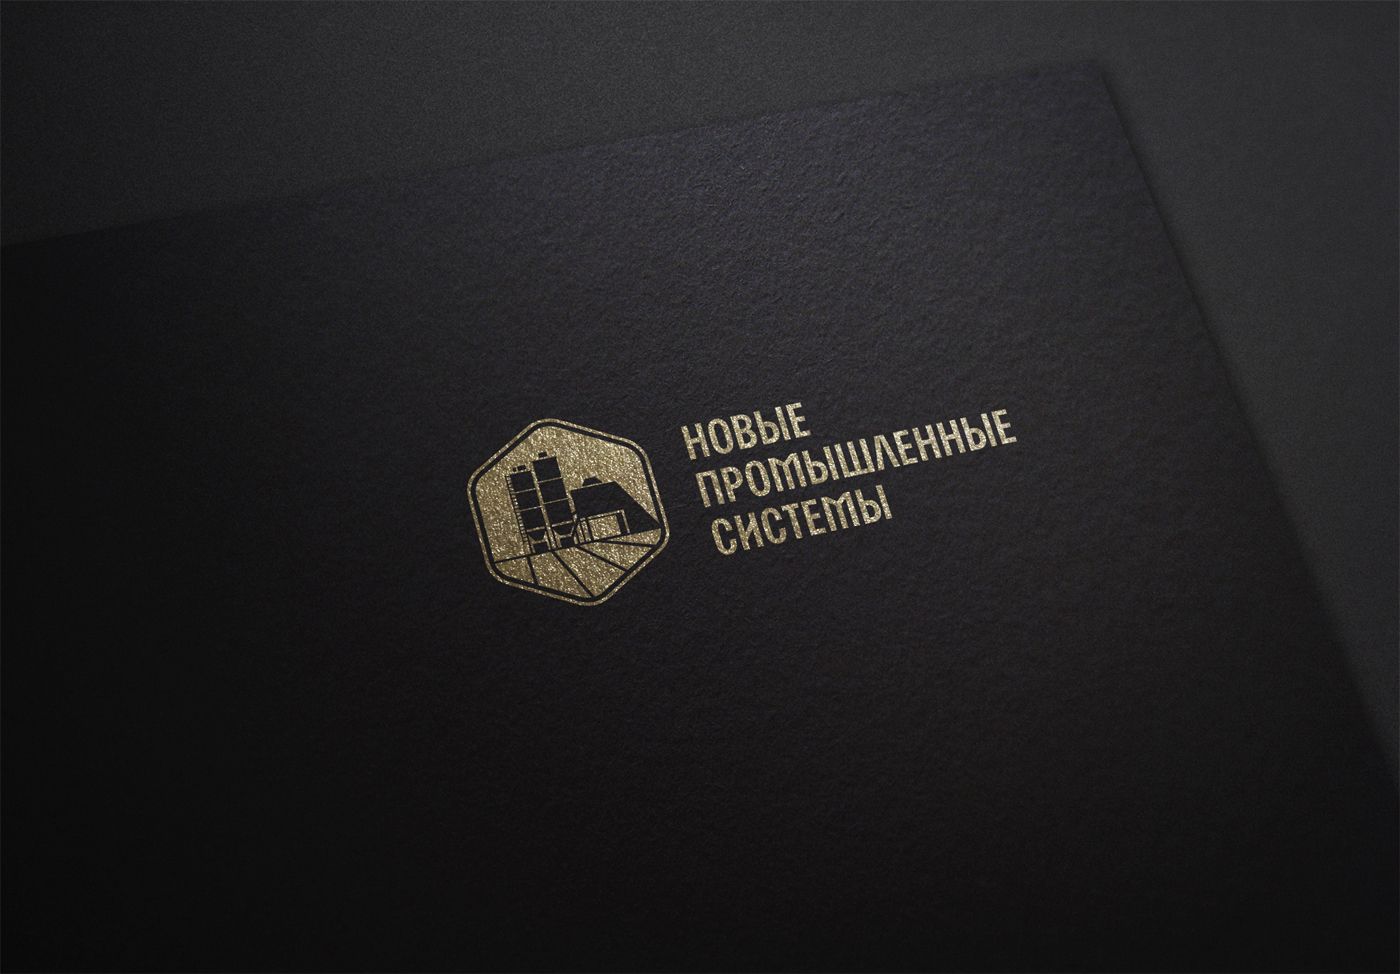 Логотип для НПС (Новые Промышленные Системы) - дизайнер mz777